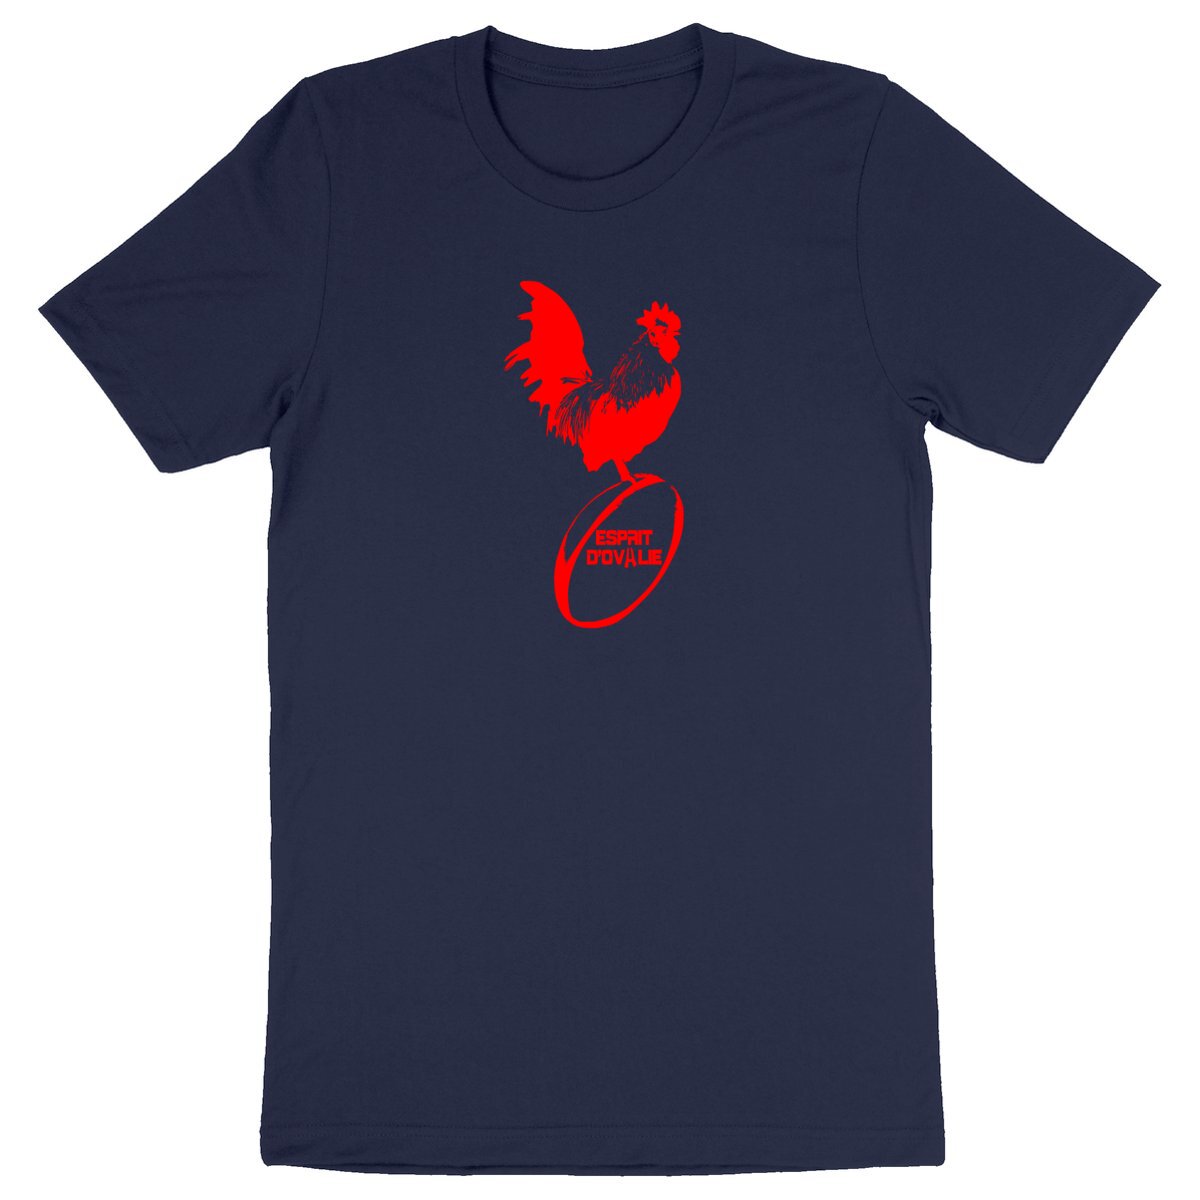 T shirt bio Esprit d'0valie coq rouge